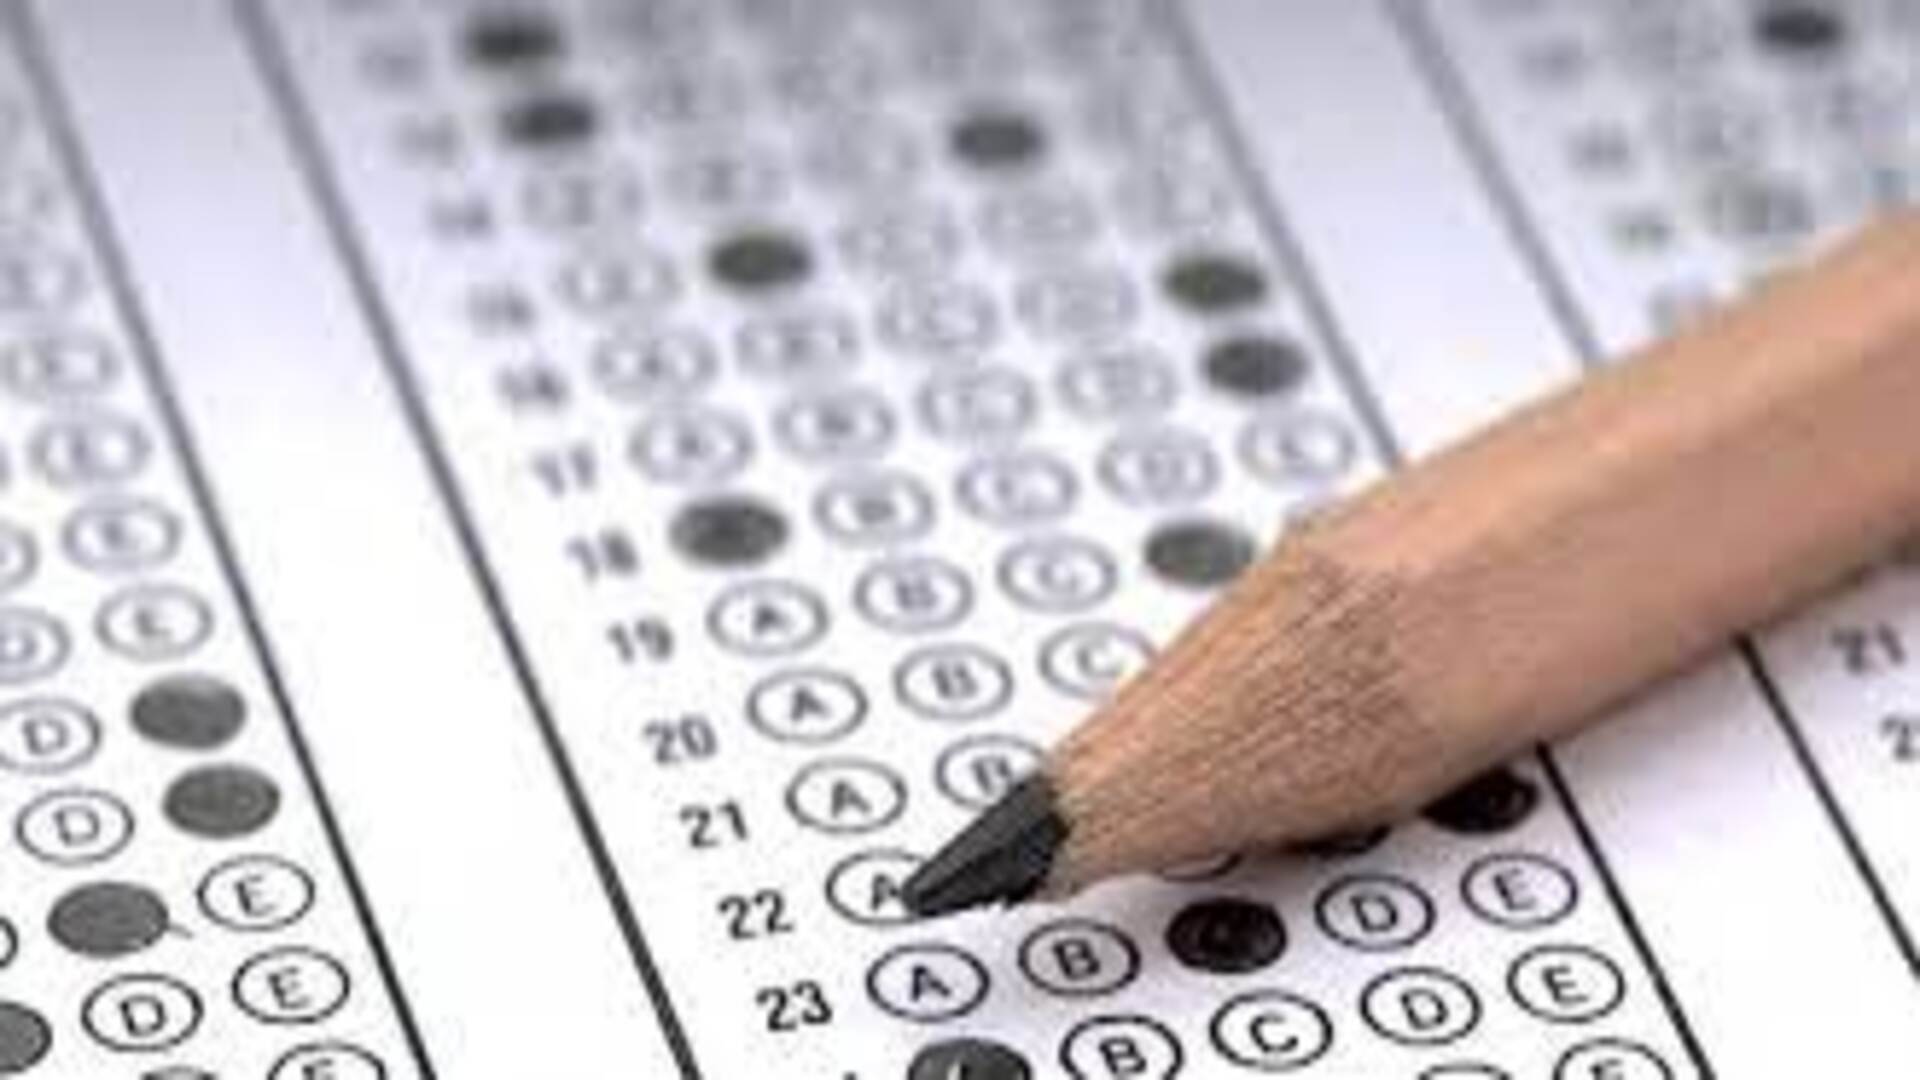 JBT exam results delayed, teachers in Shimla raise concern